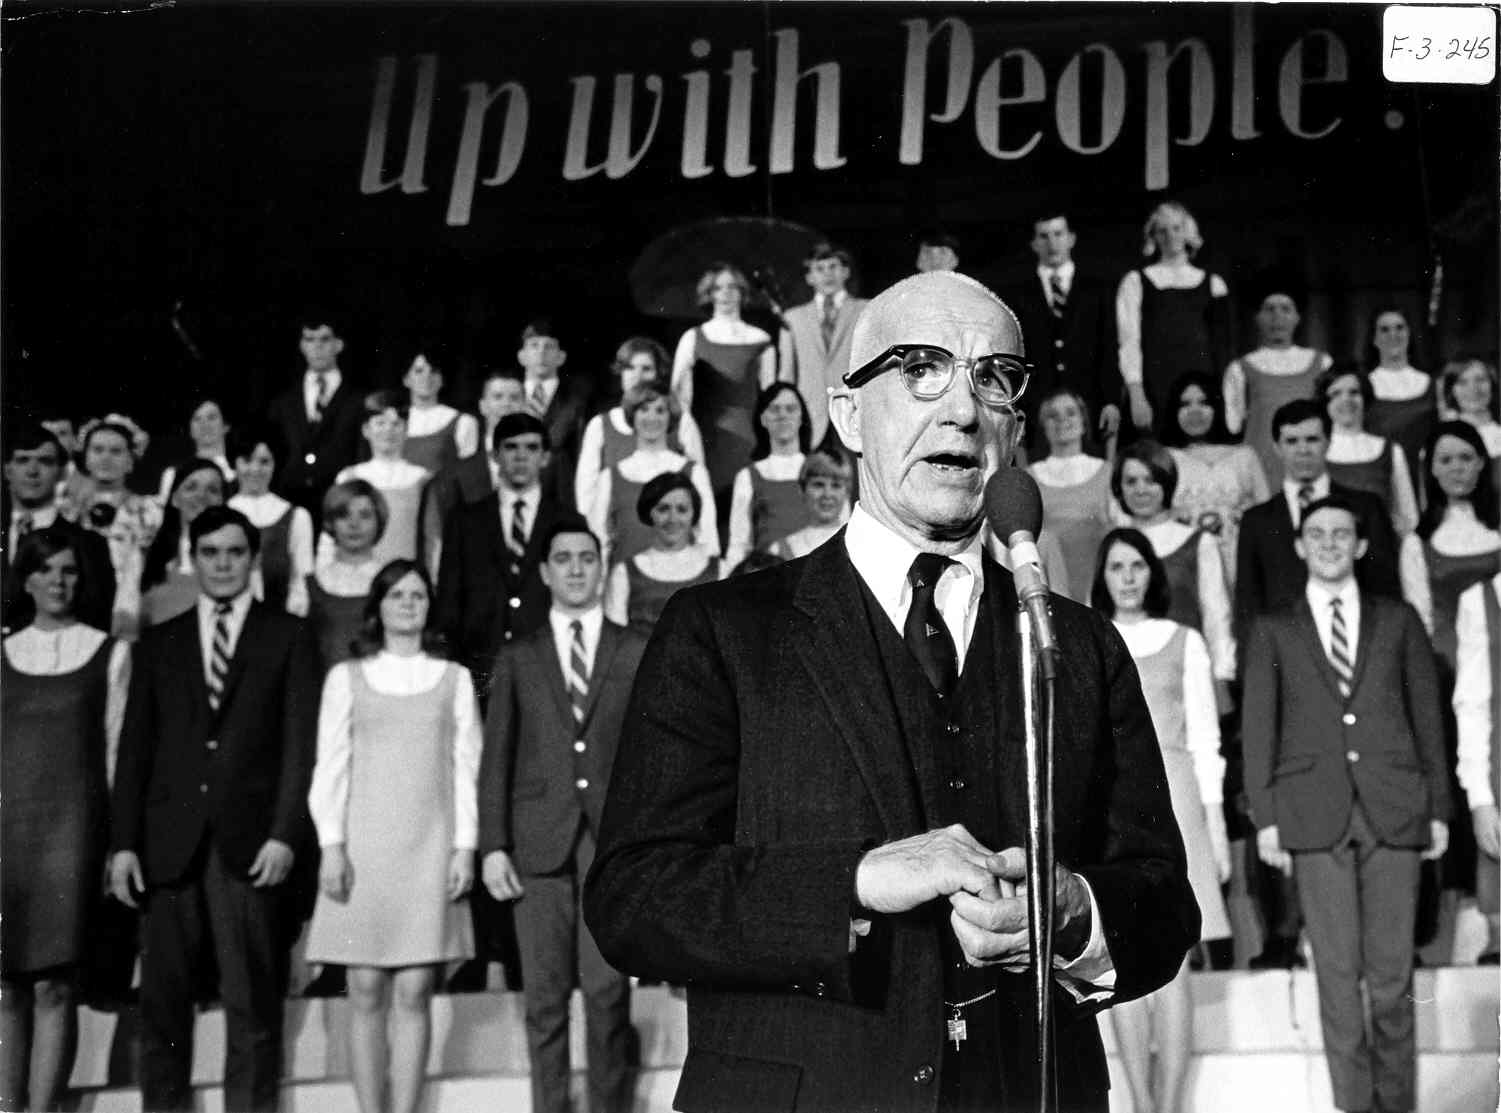 R. Buckminster Fuller with people Santa Fe, NM 1968